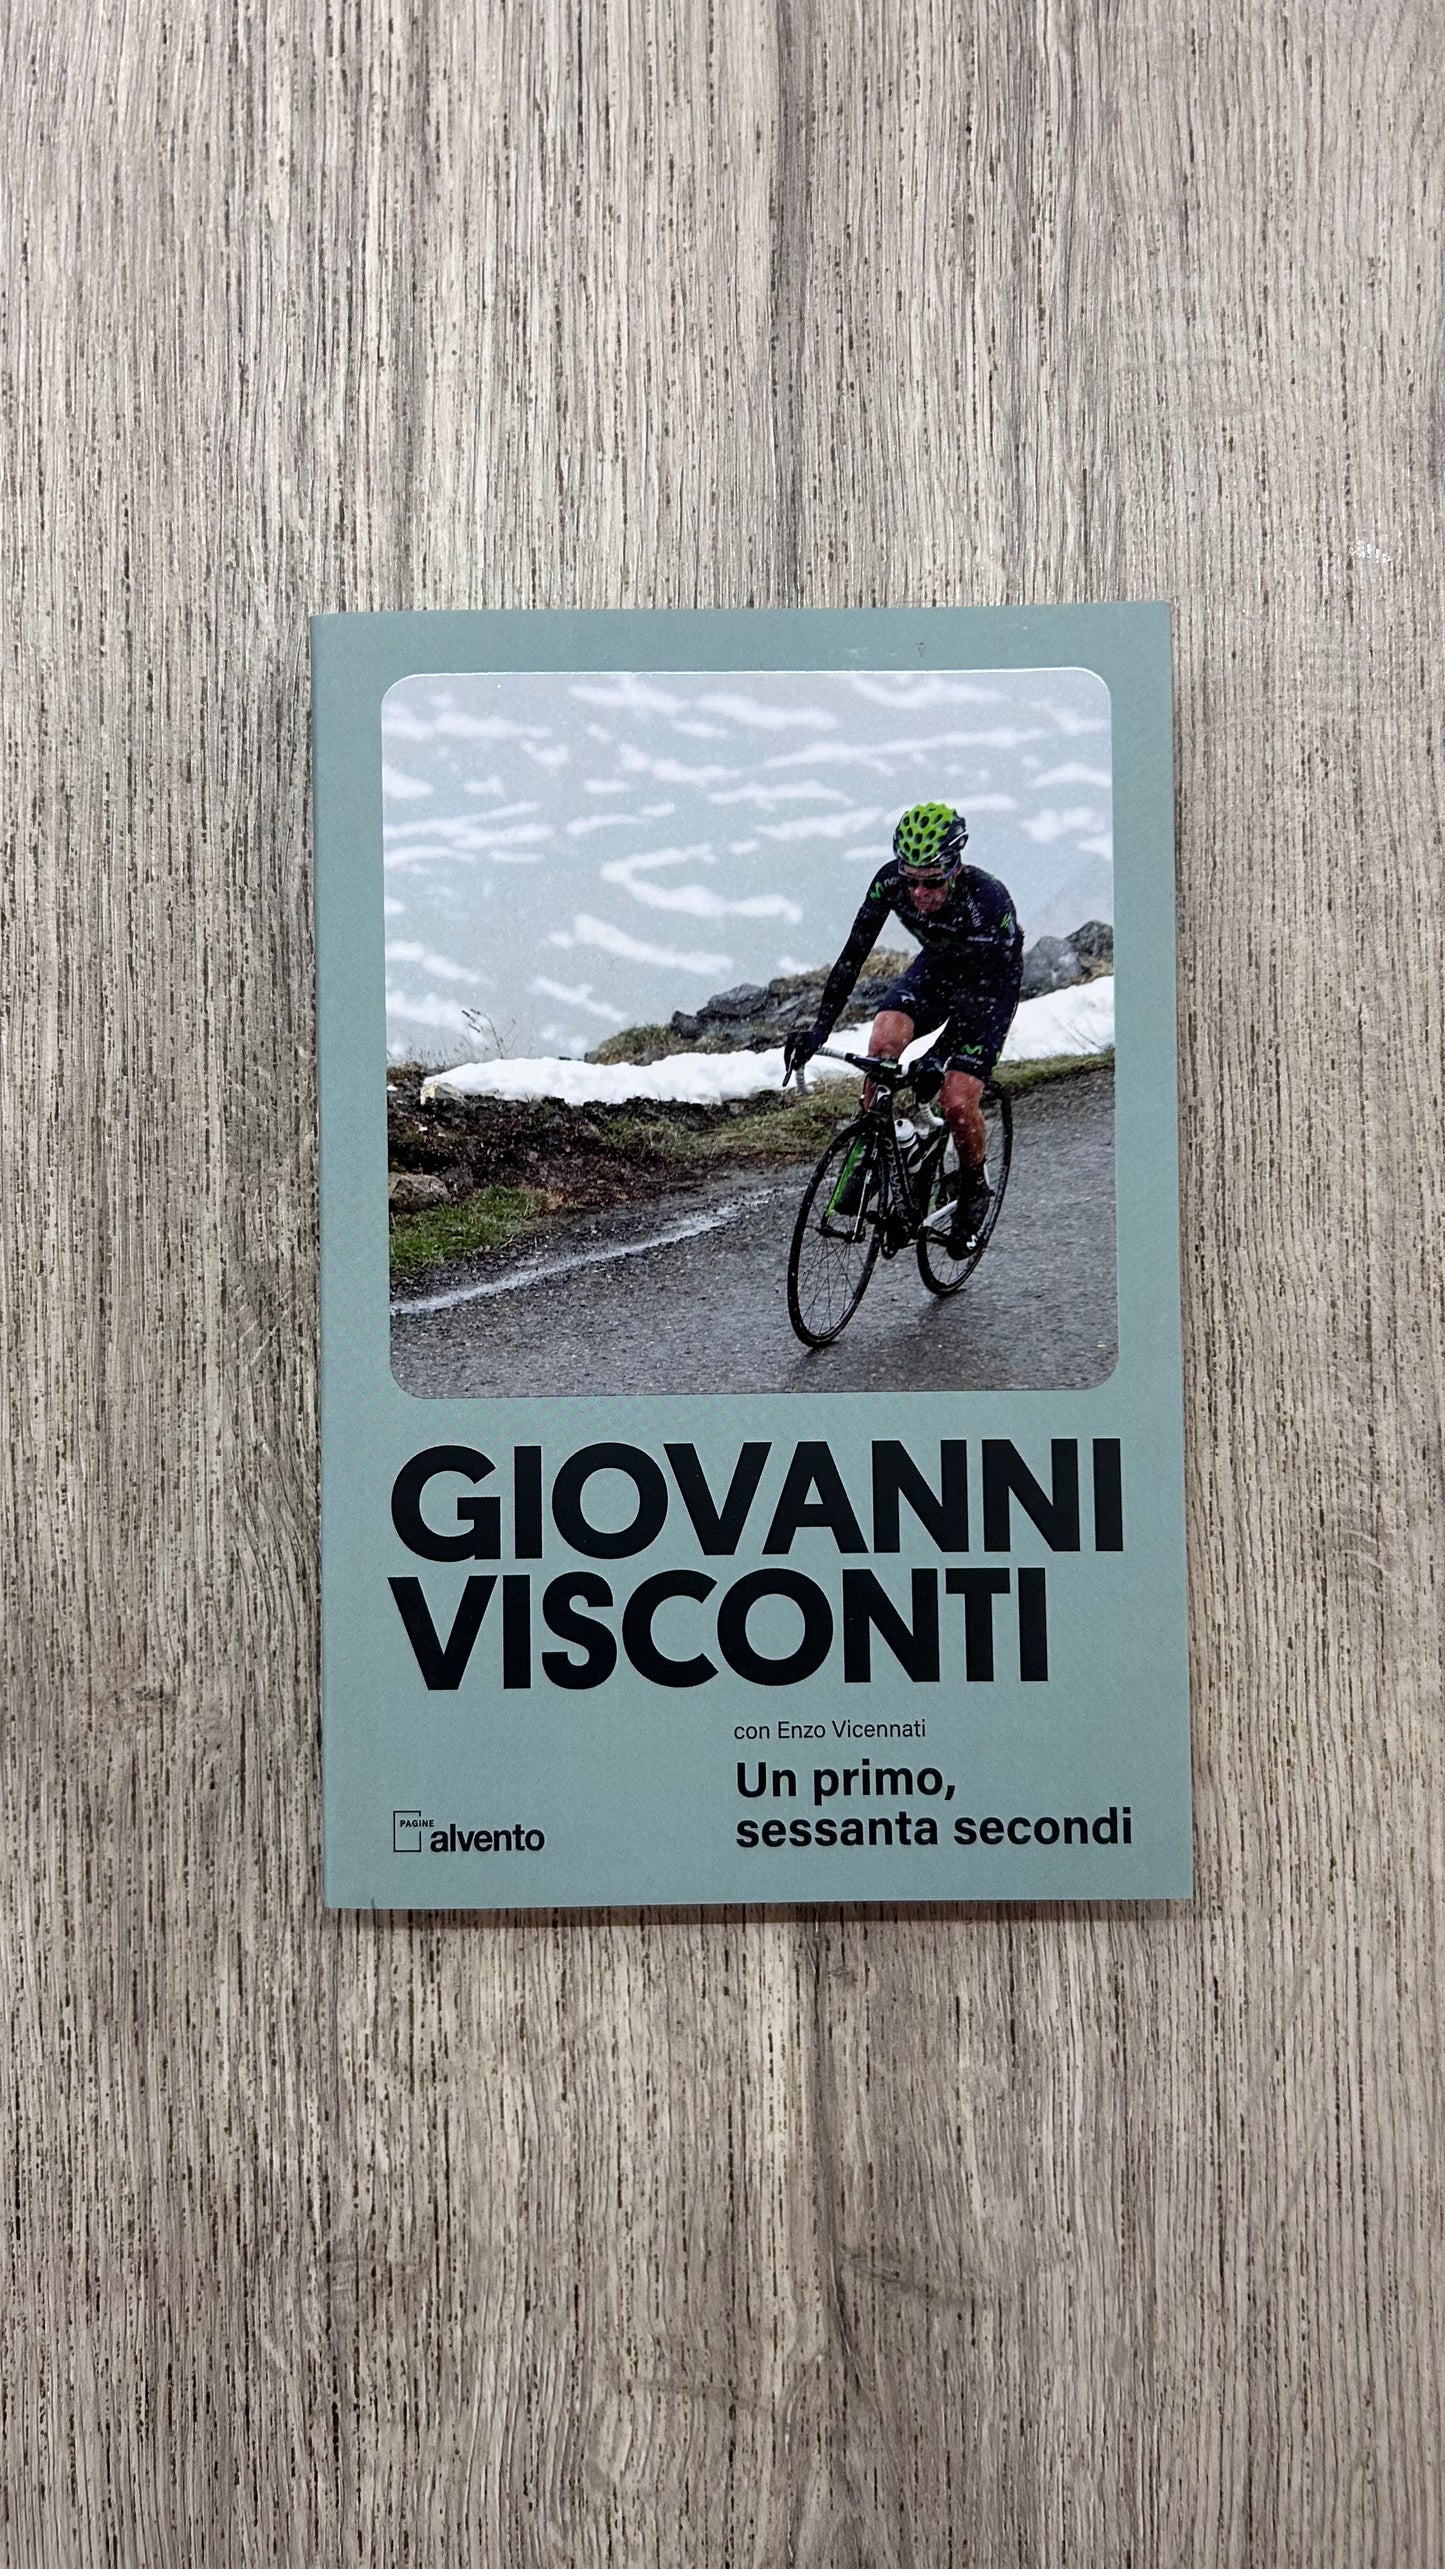 Giovanni Visconti - Un primo, sessanta secondi